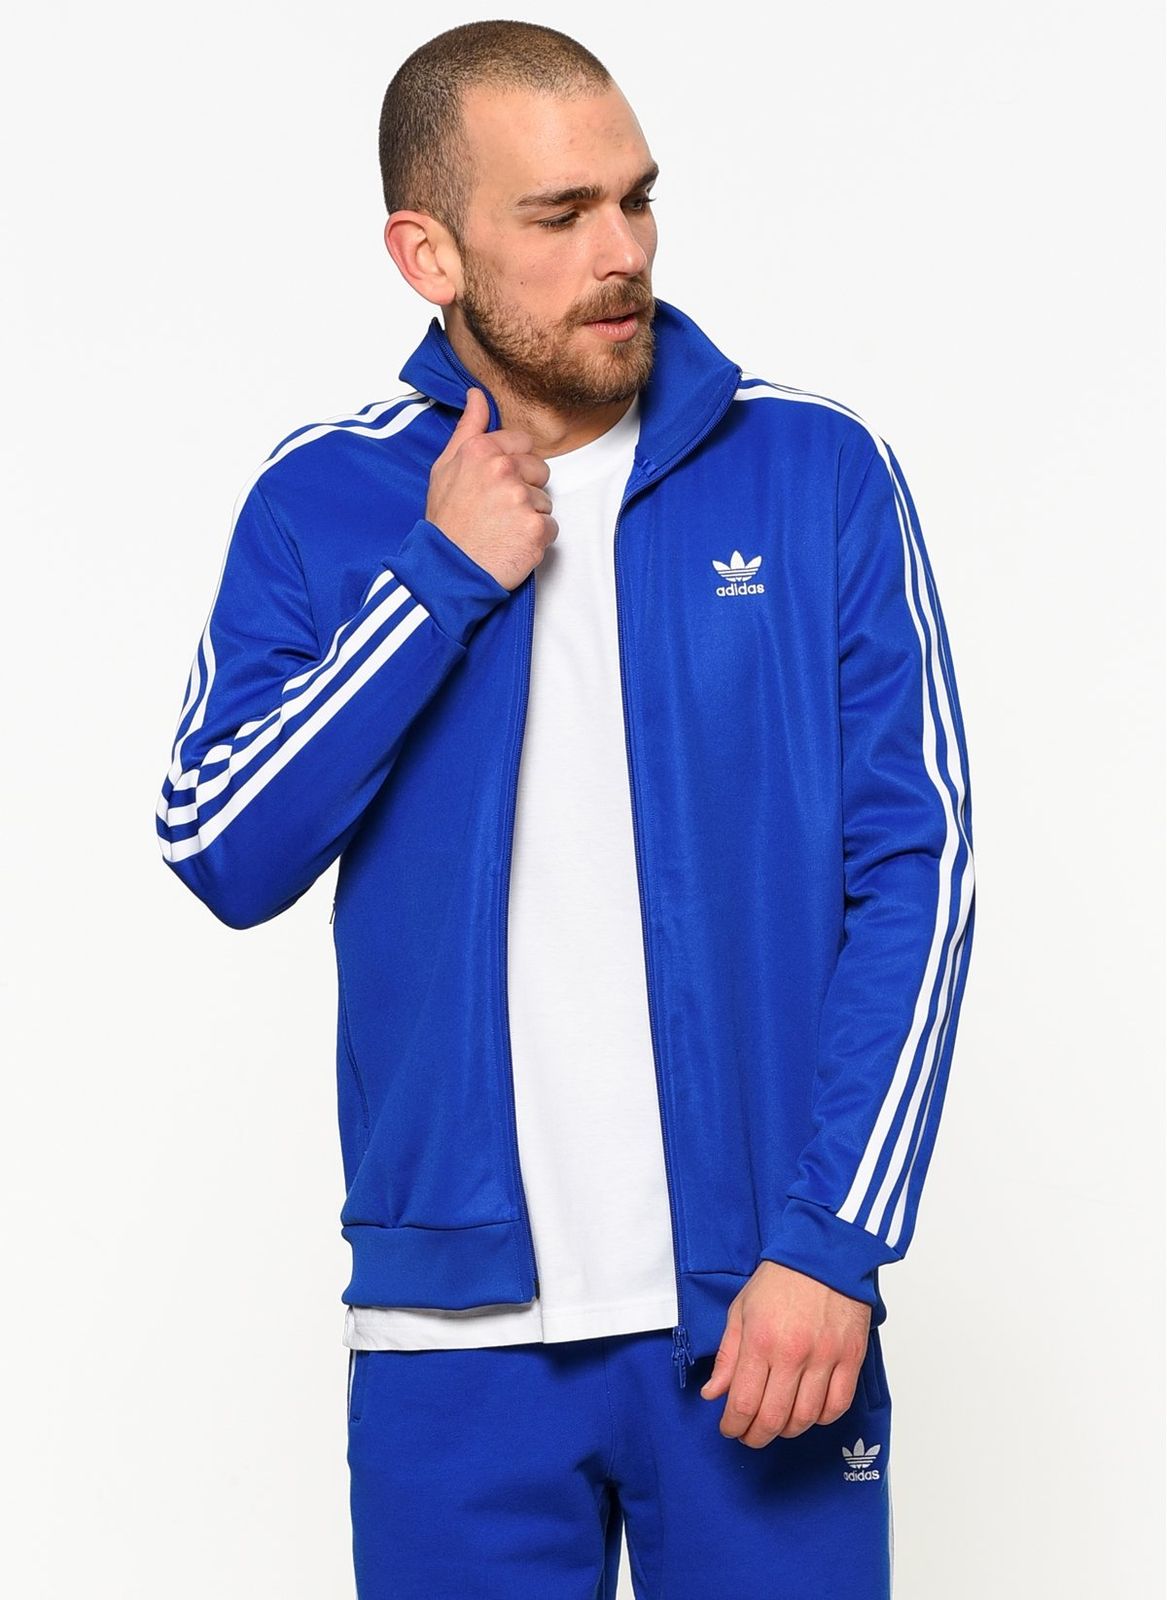 Adidas originals Beckenbauer tt sports jacket sports training | eBay